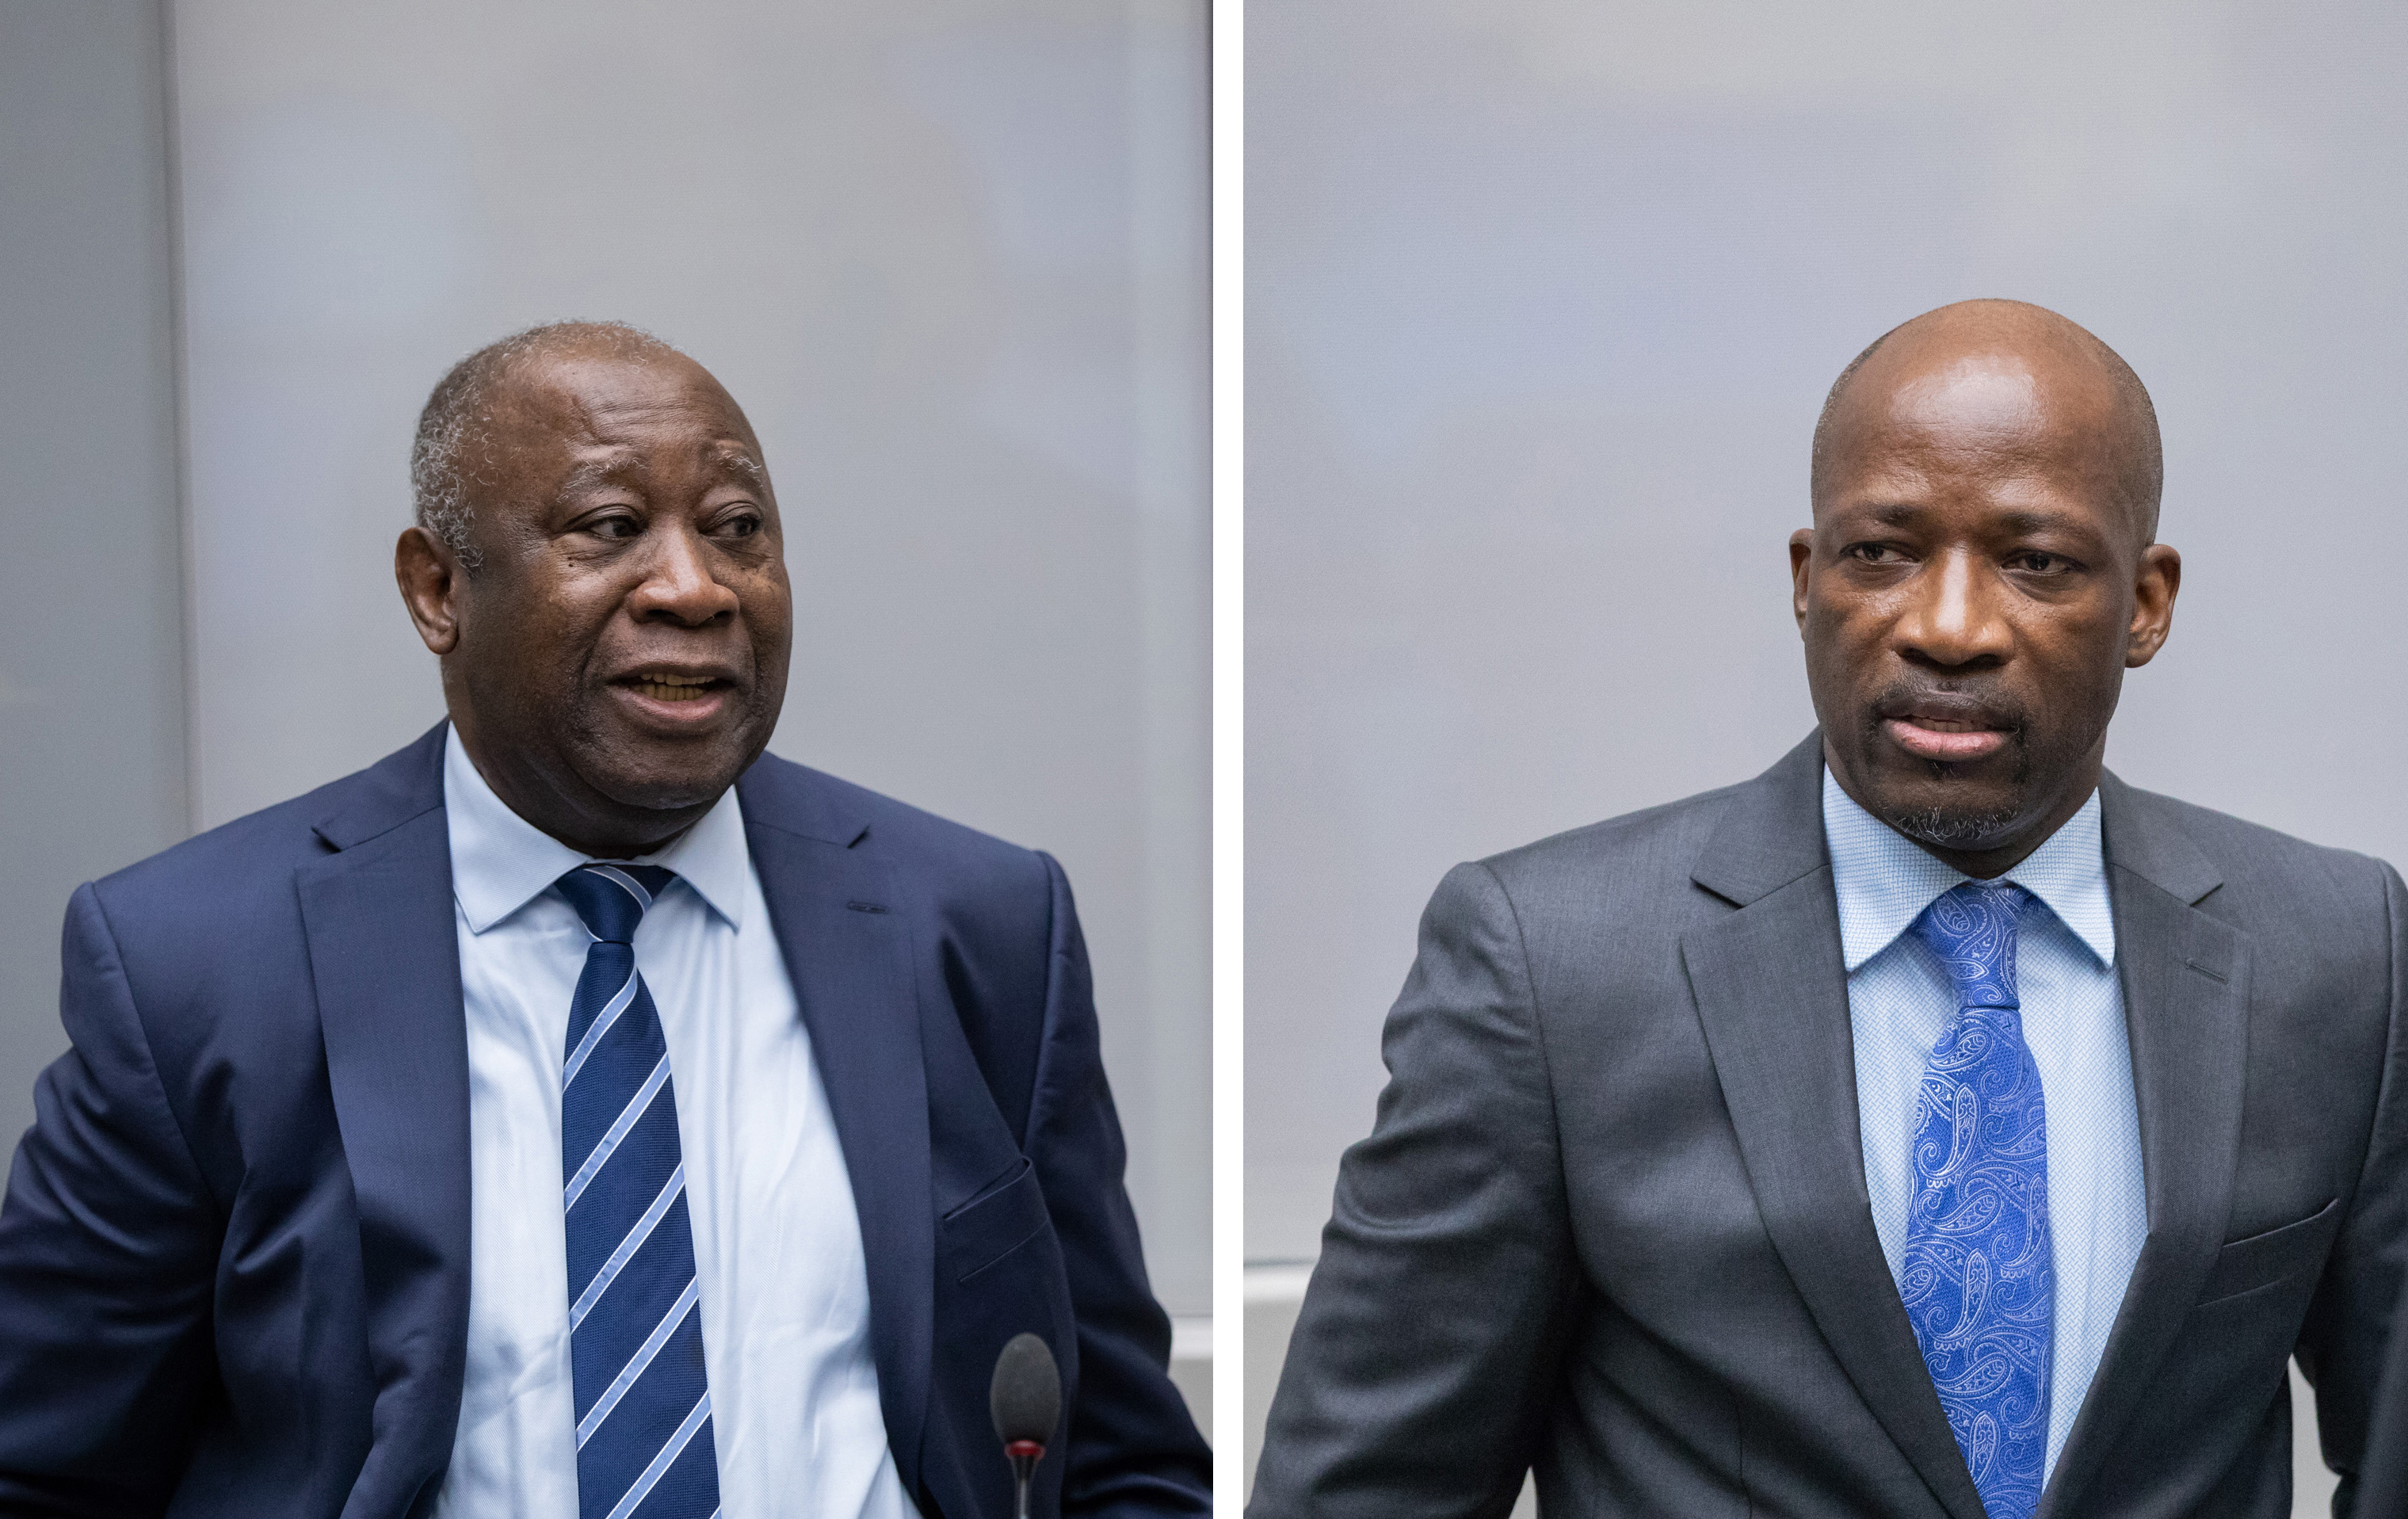 Laurent Gbagbo et Charles Blé Goudé lors de l’audience du 15 janvier 2019 devant la Cour pénale internationale à La Haye, Pays-Bas ©ICC-CPI